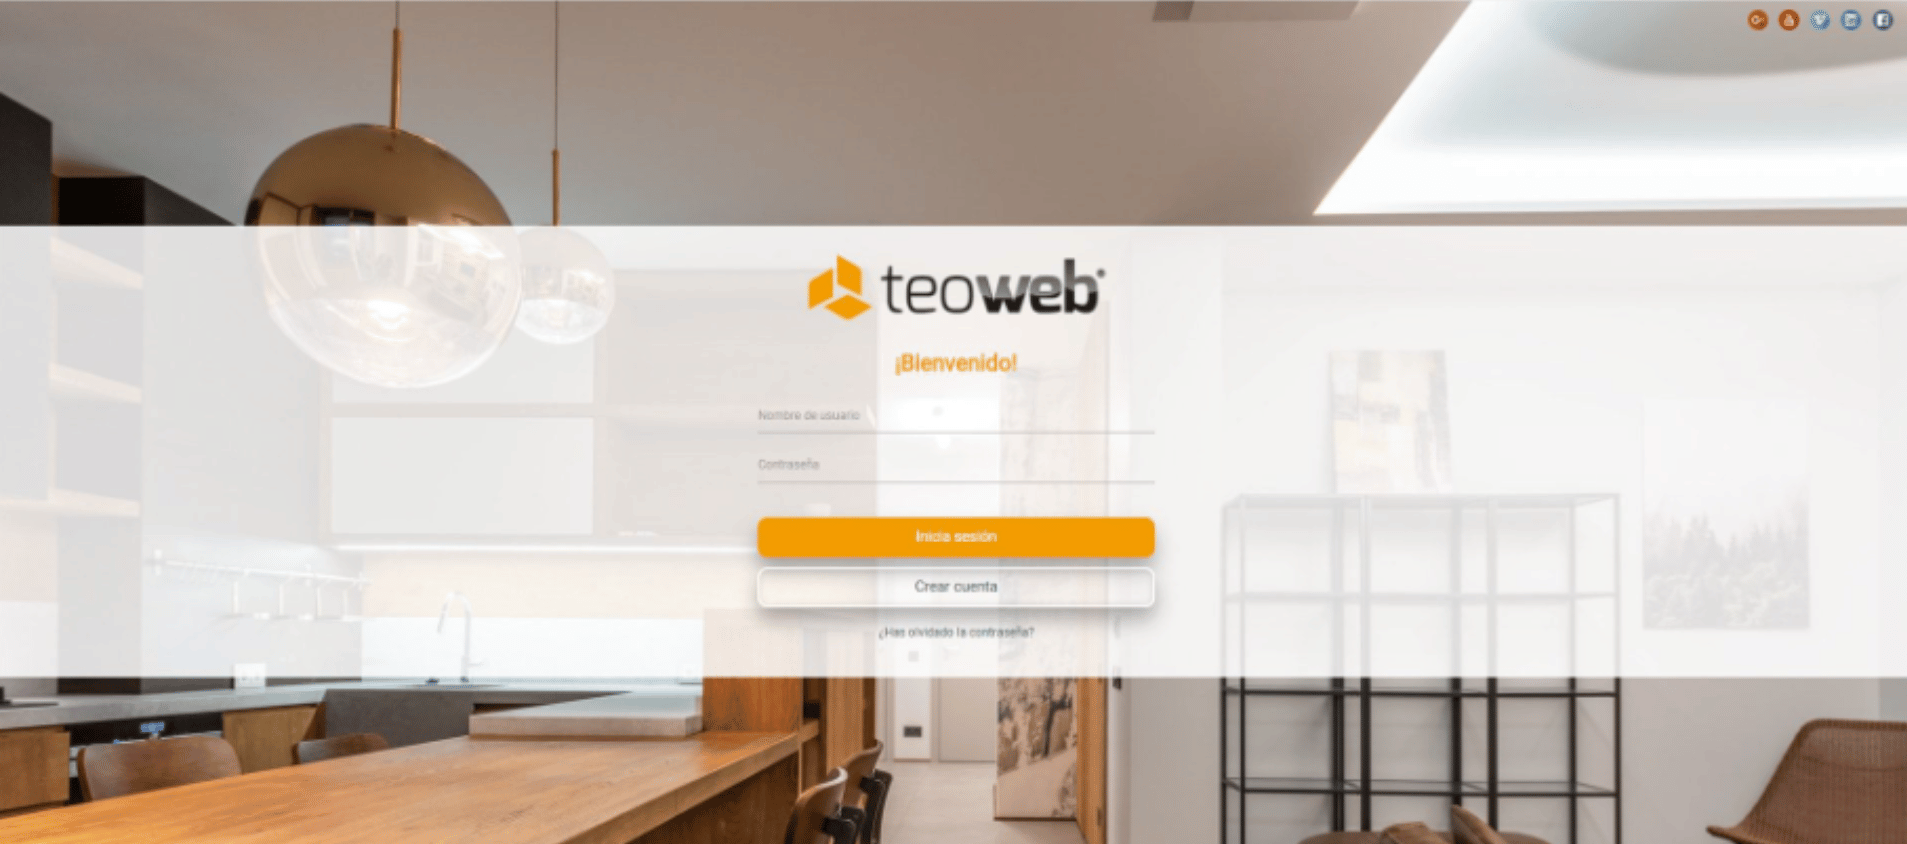 Teoweb: software online para fabricantes de muebles.